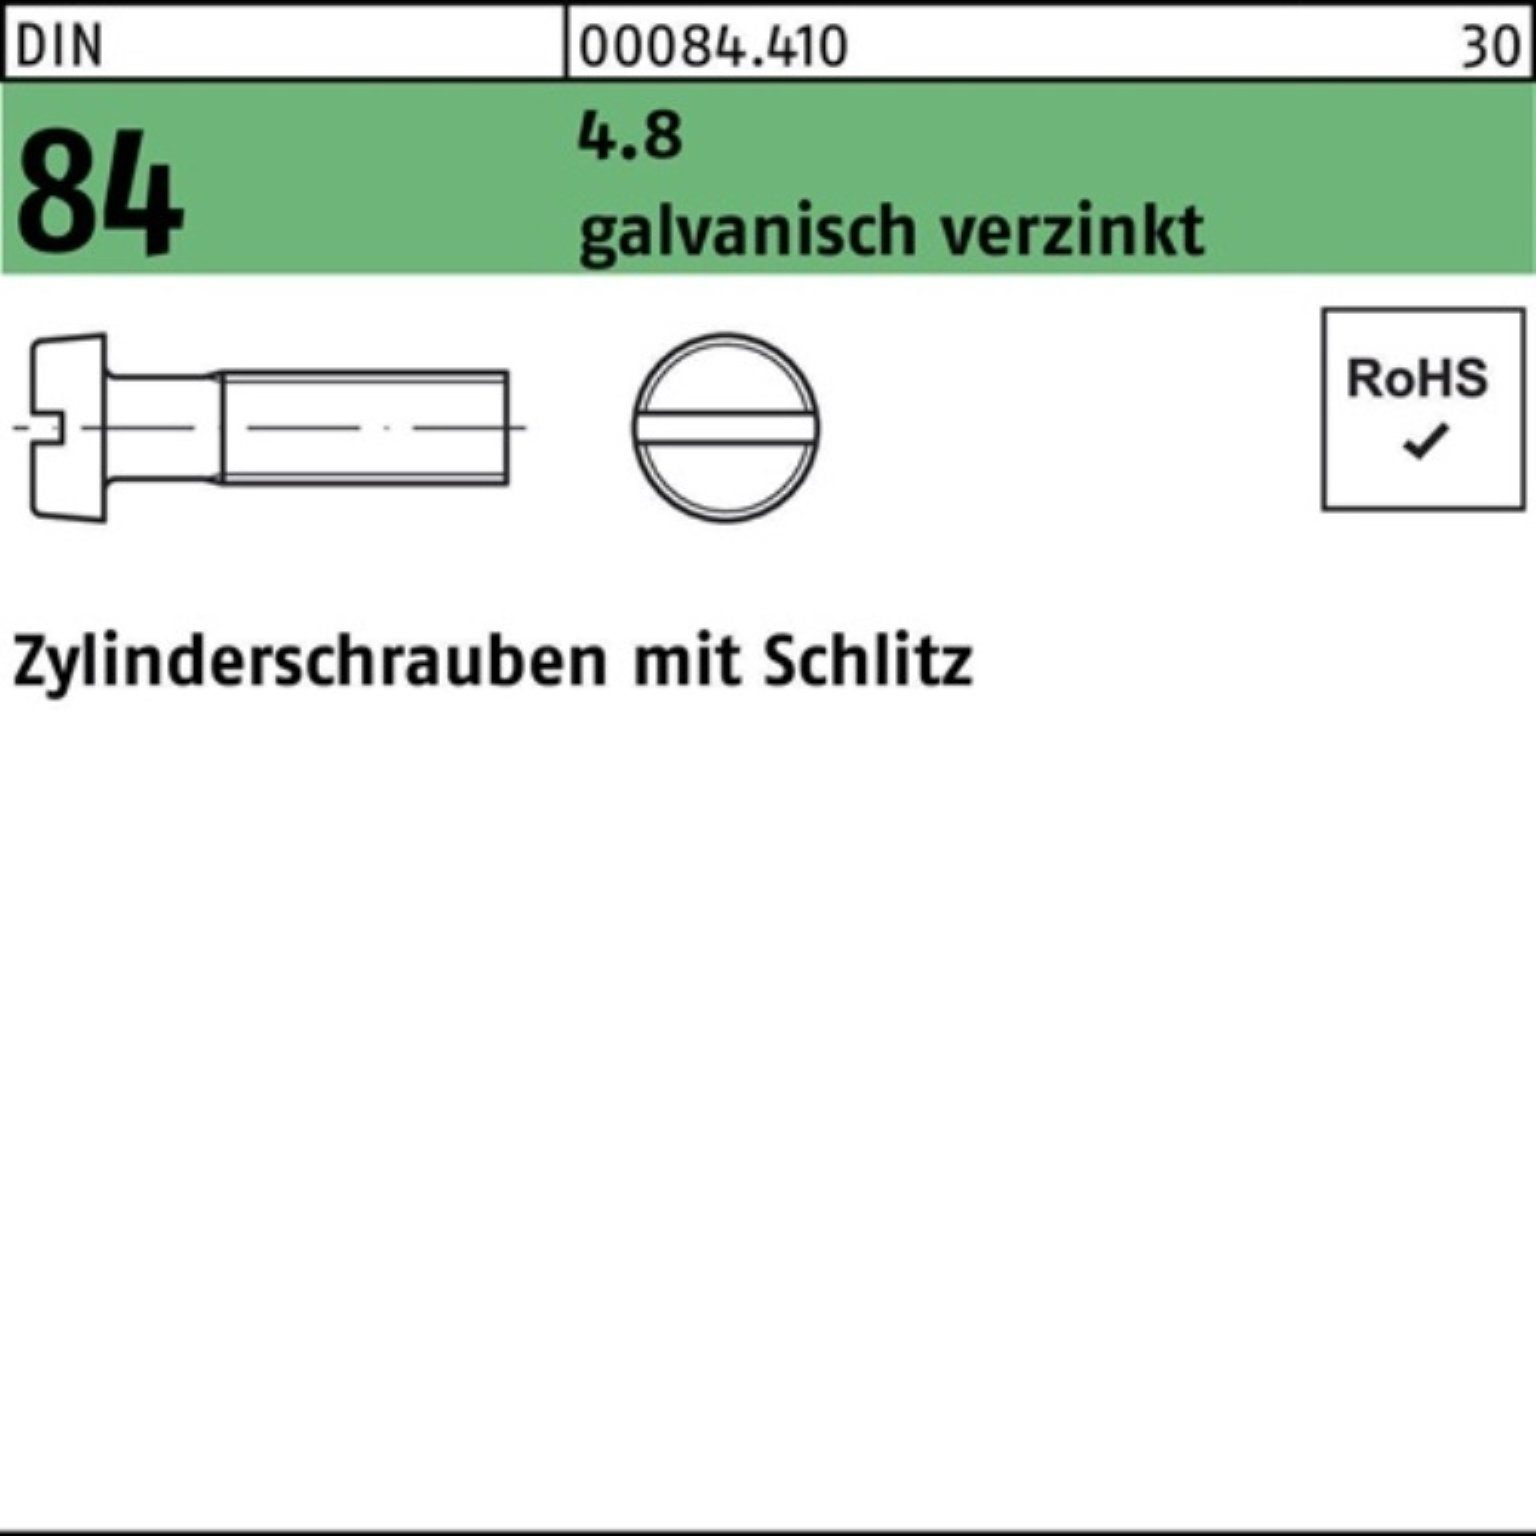 Beliebte Neuware Reyher Zylinderschraube 1000er M5x20 Zylinderschraube 84/ISO Pack DIN Schlitz galv.ve 1207 4.8